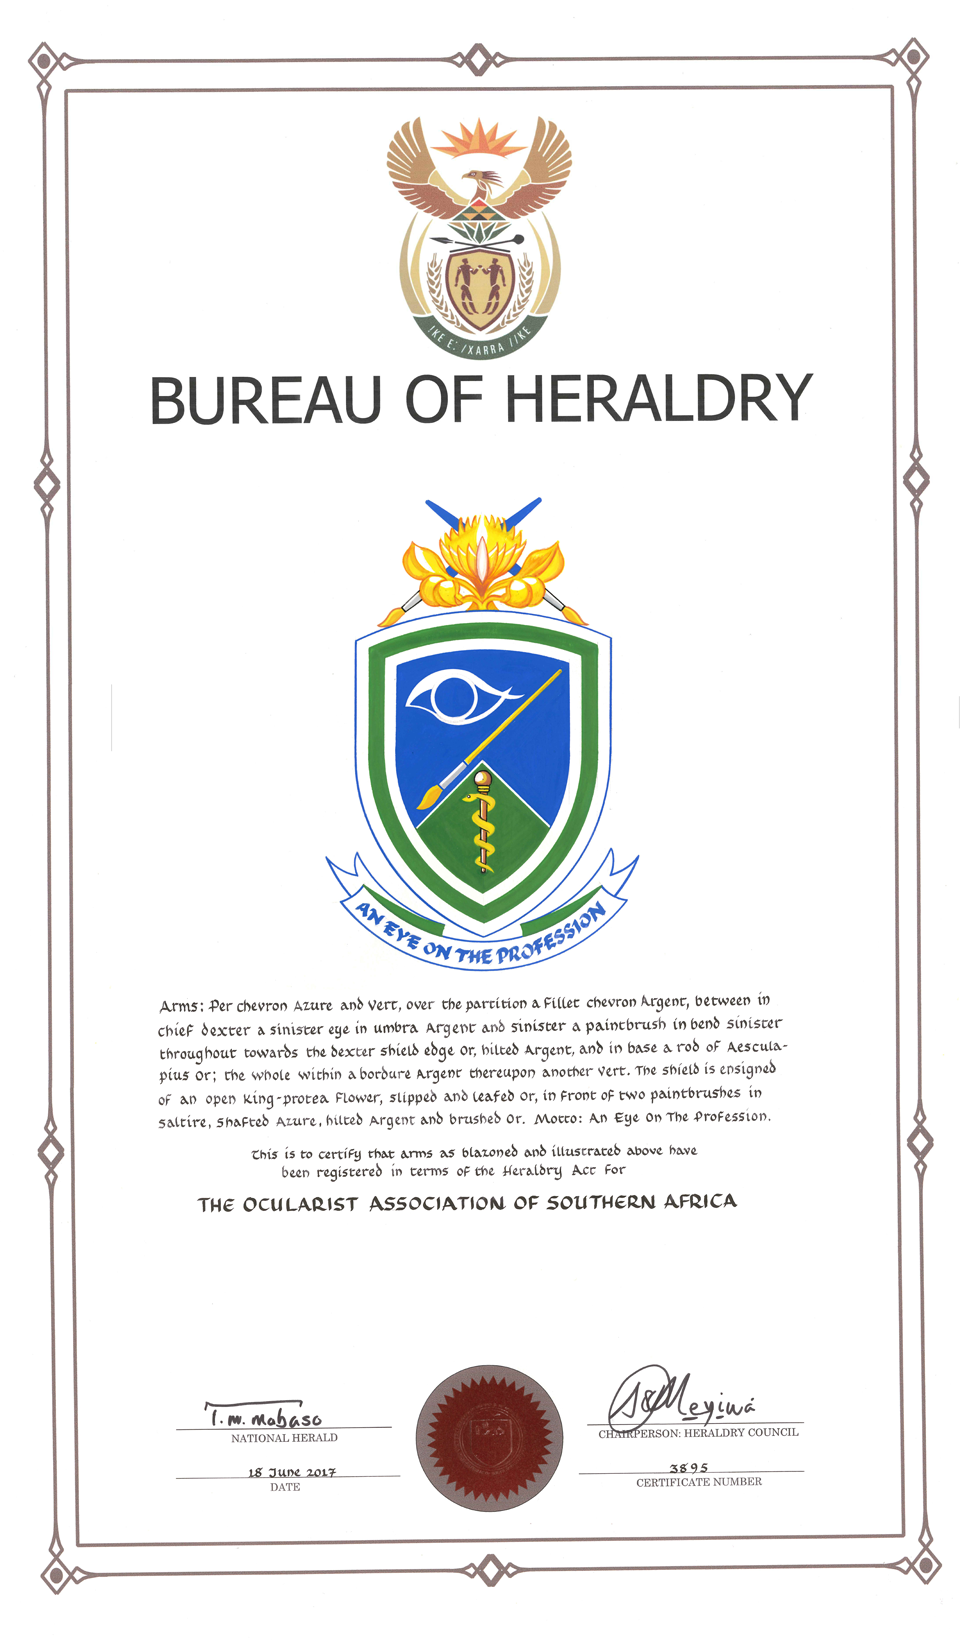 OASA Heraldry